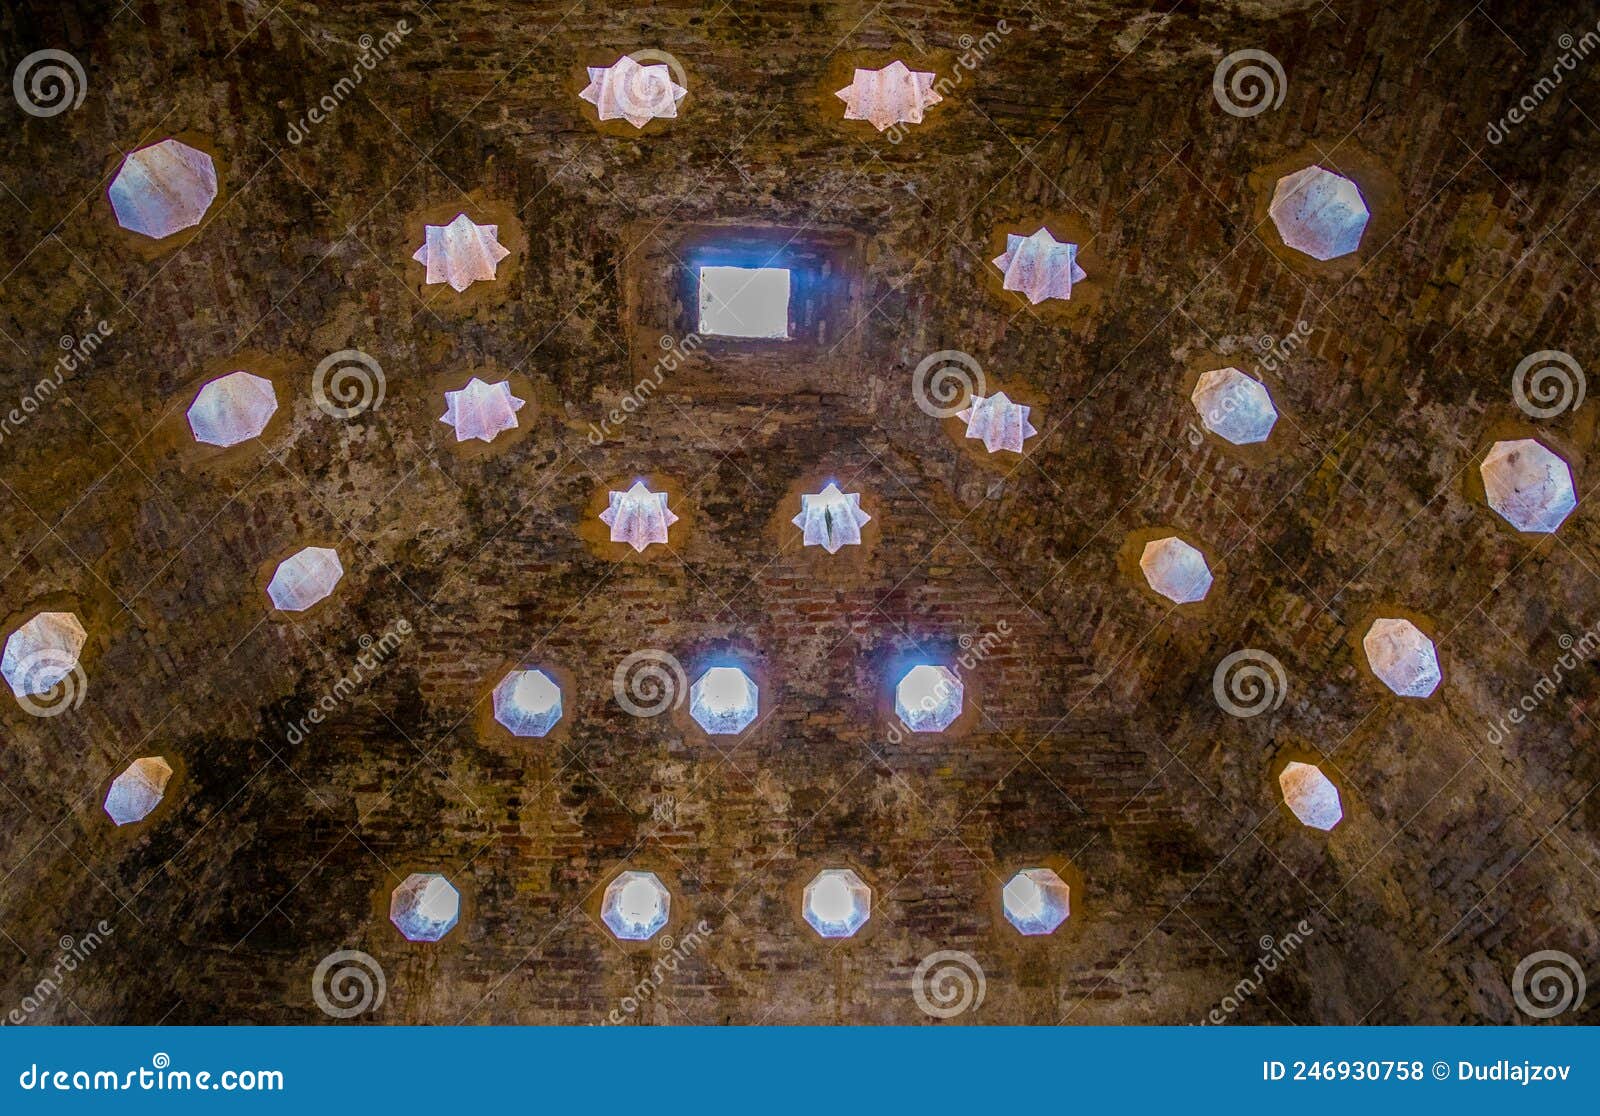 interior of banos arabes in spanish city granada....image